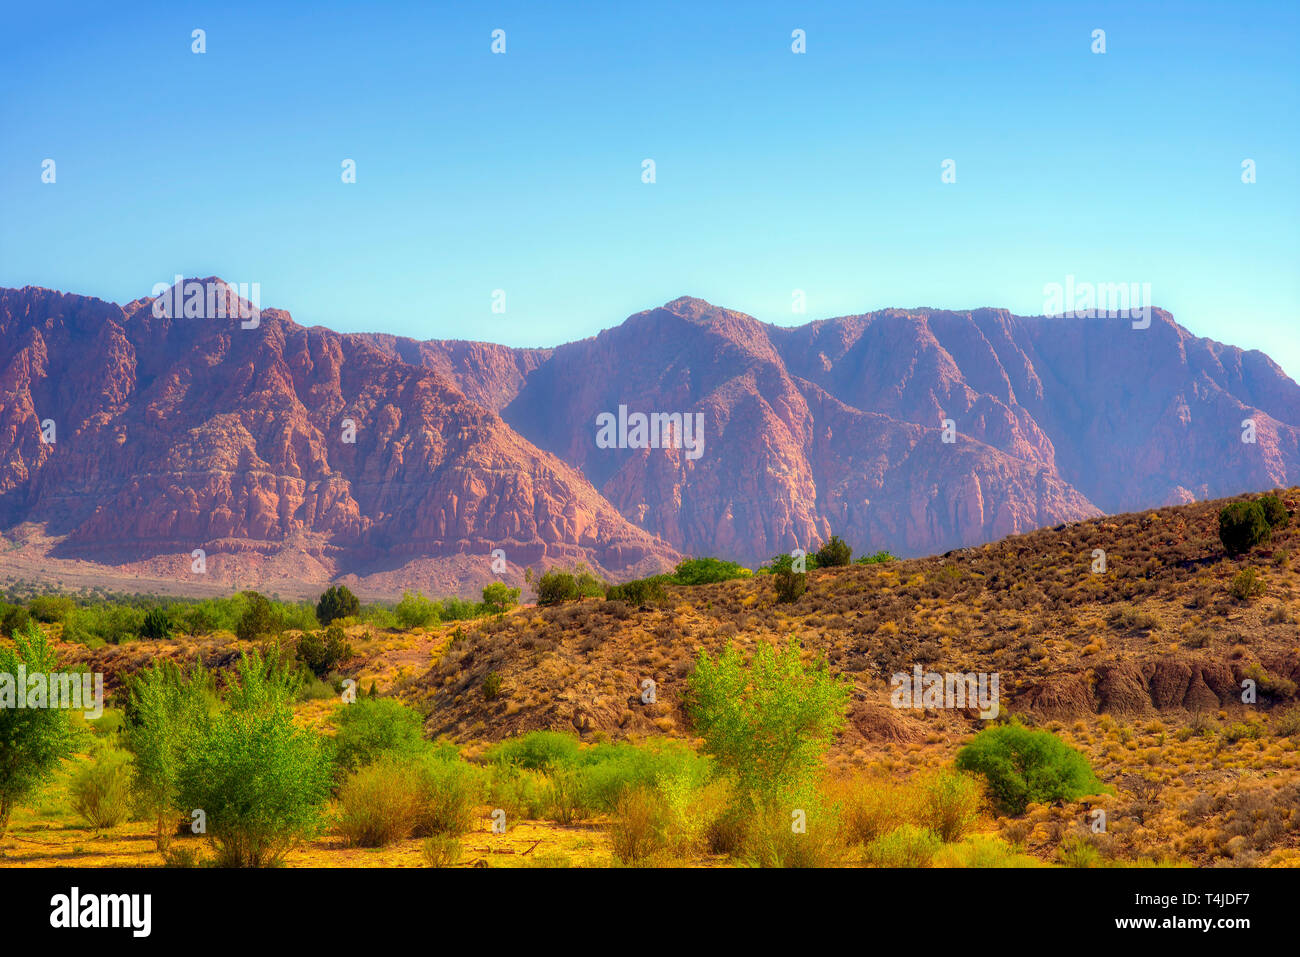 La lumière du soleil du matin brille sur les buissons d'un vert vif dans désert avec au-delà des montagnes Rocheuses rouge sous un ciel bleu clair. Banque D'Images